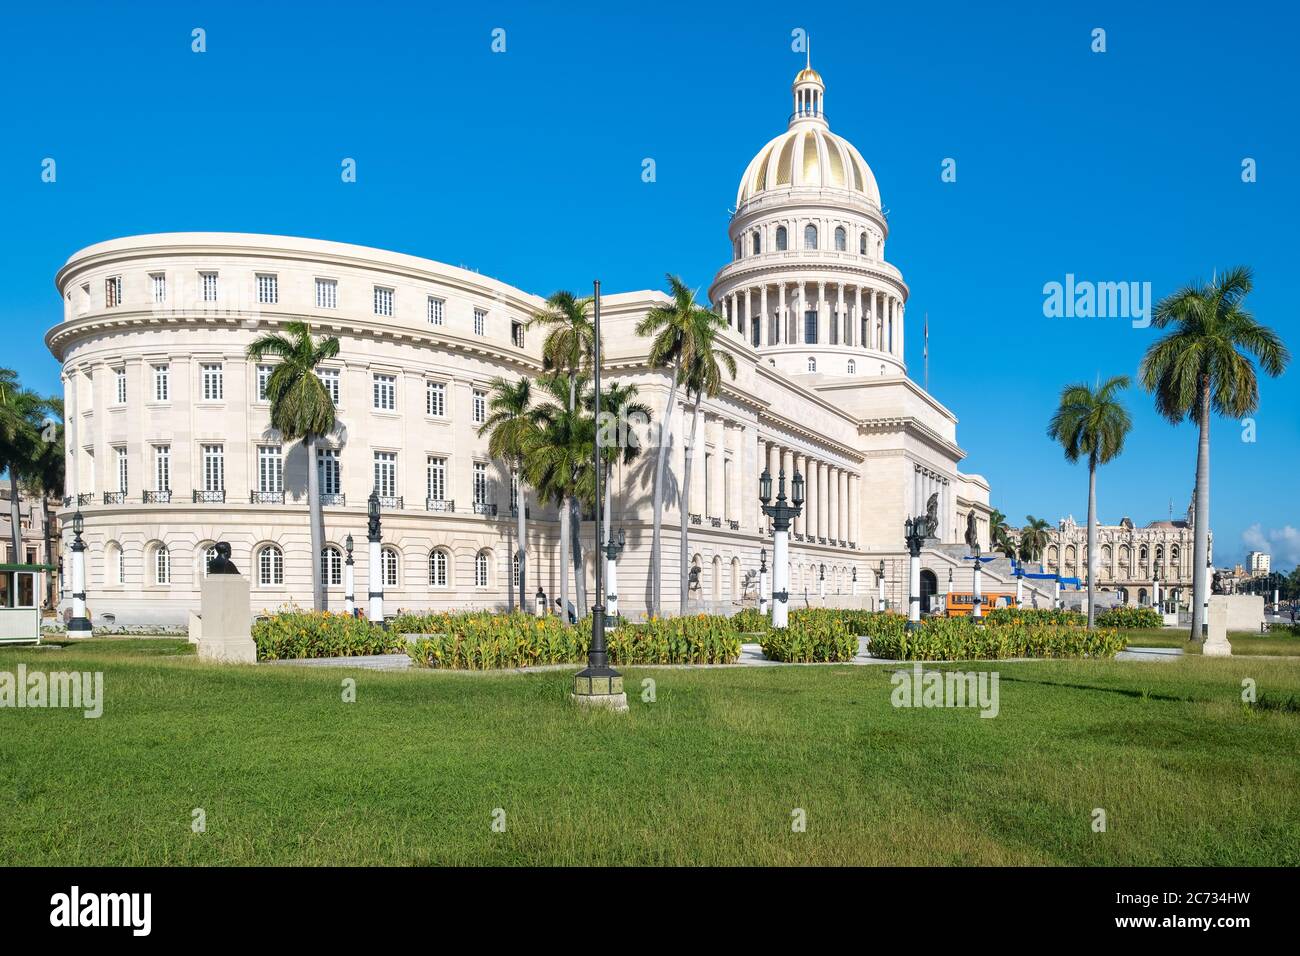 Le Capitole de la Havane, une icône de la capitale cubaine, a été récemment restauré Banque D'Images